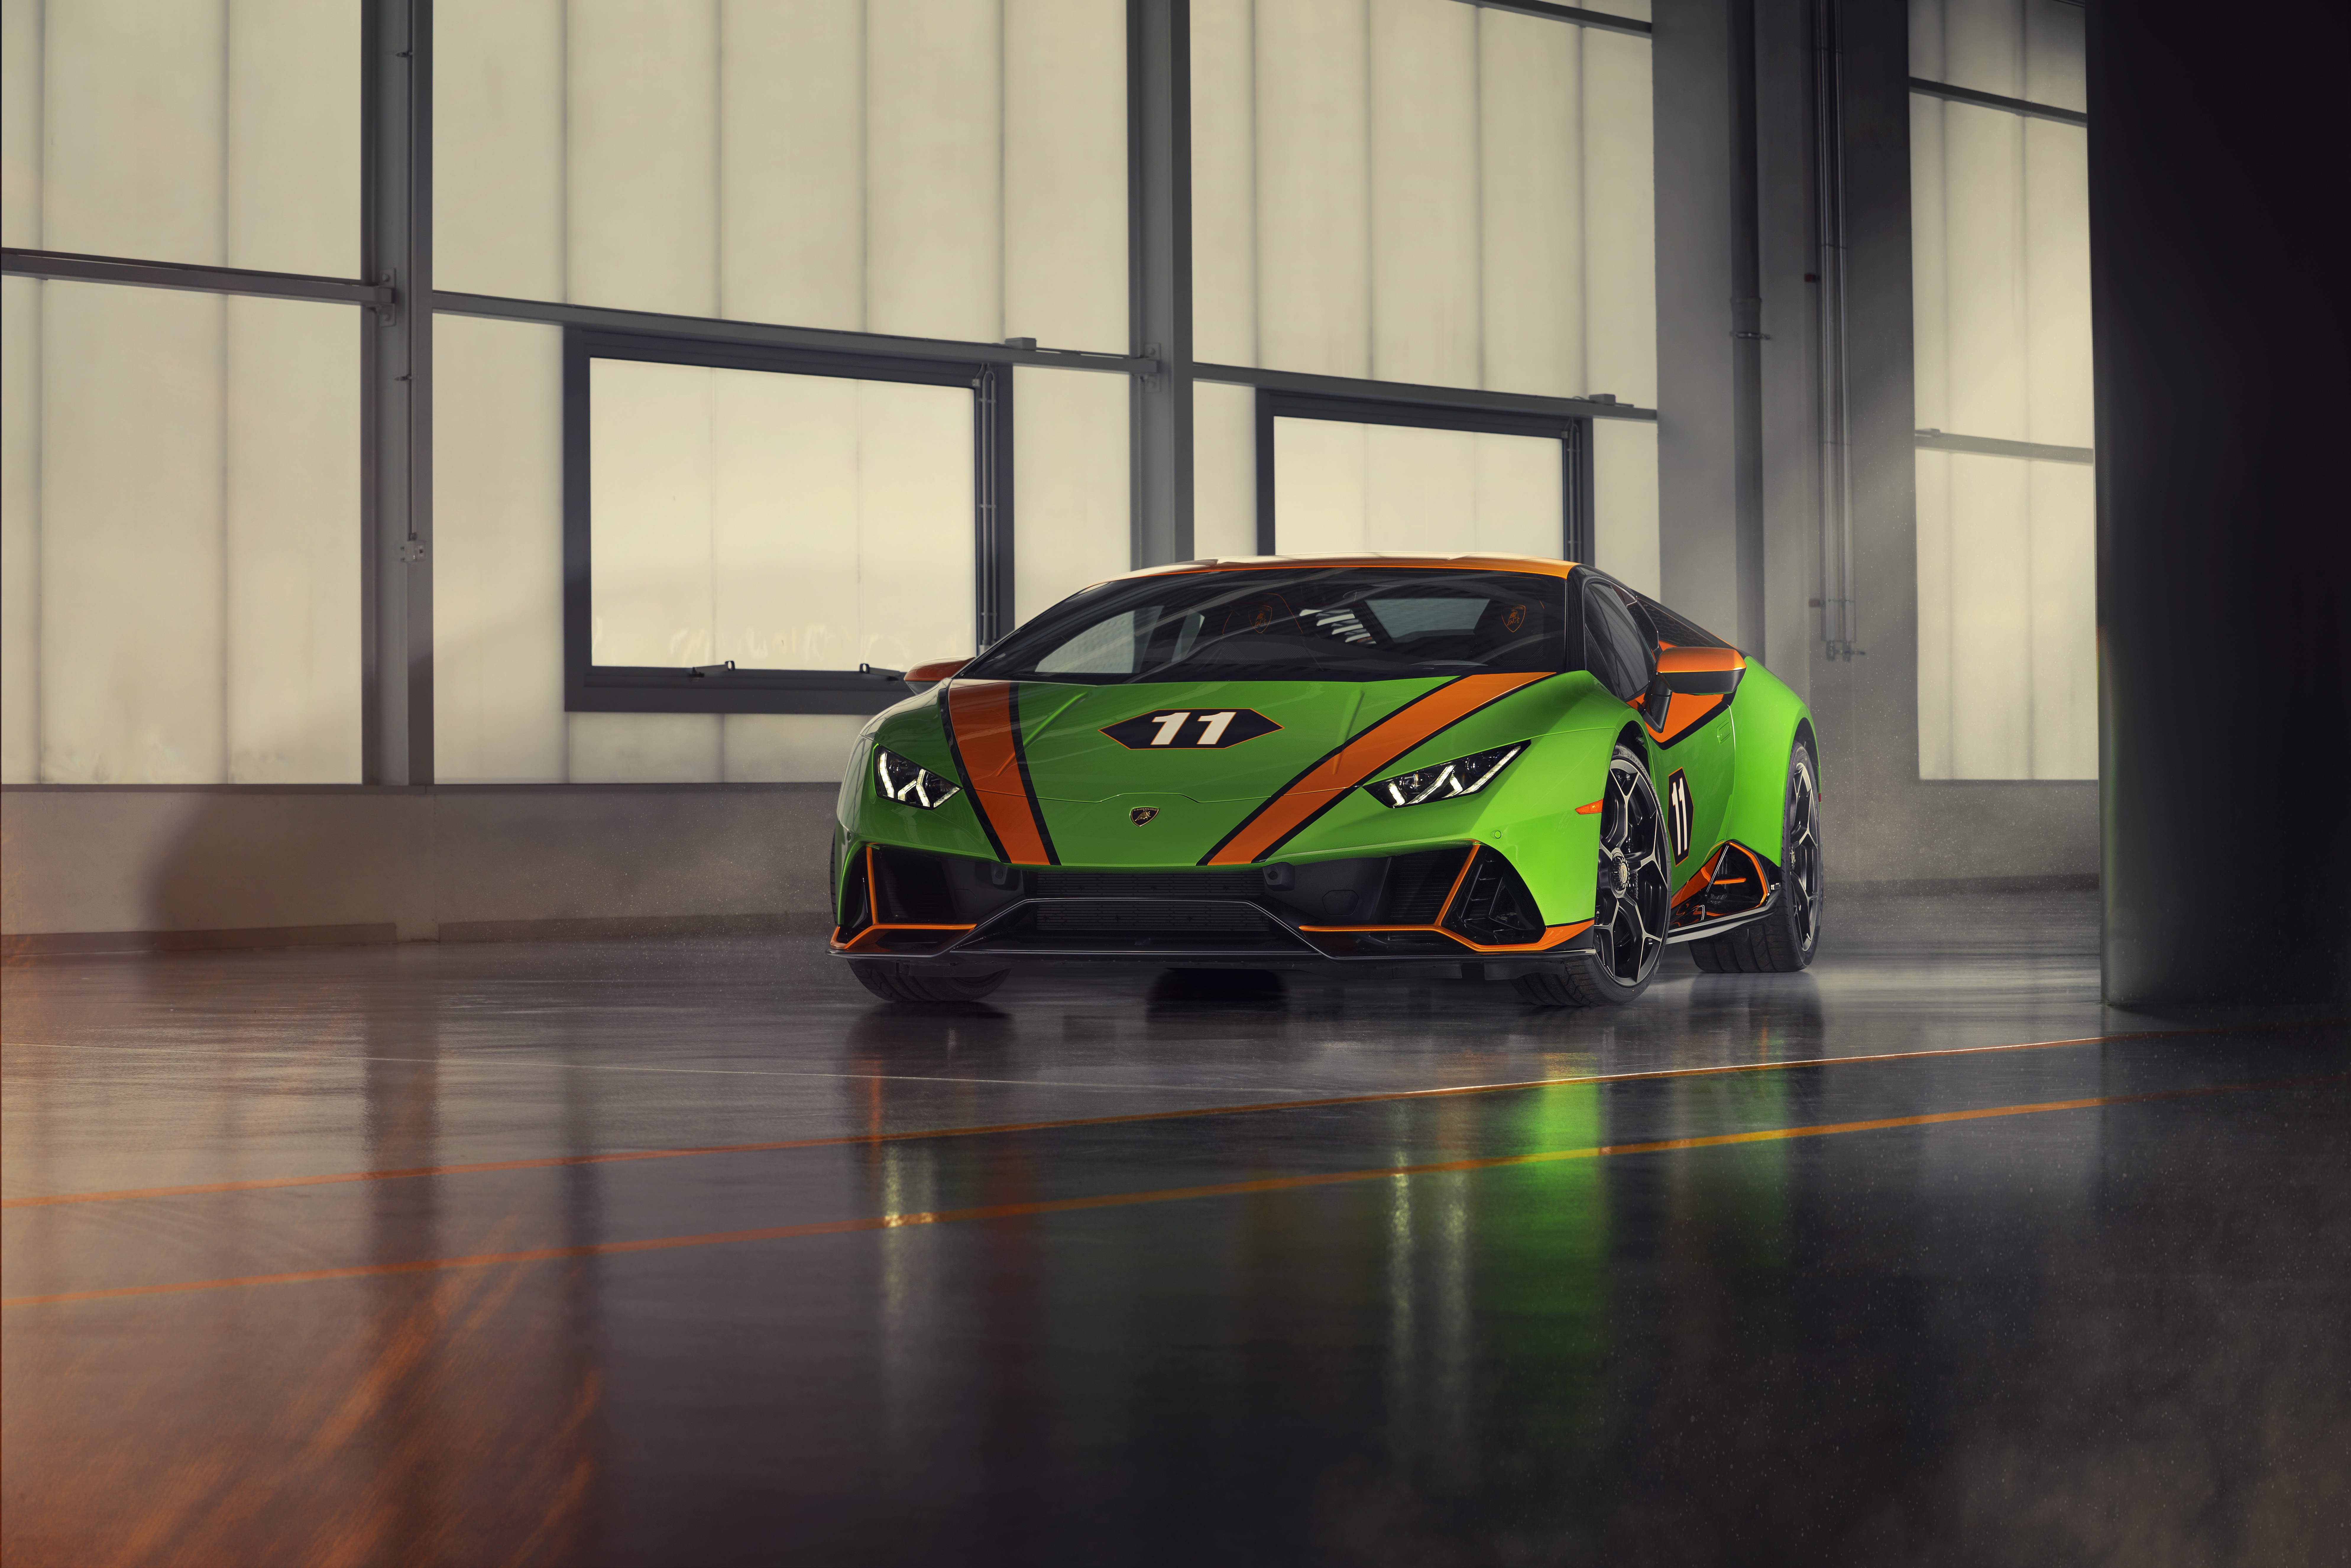 Descargar fondos de escritorio de Lamborghini Huracán Evo Gt Celebración HD